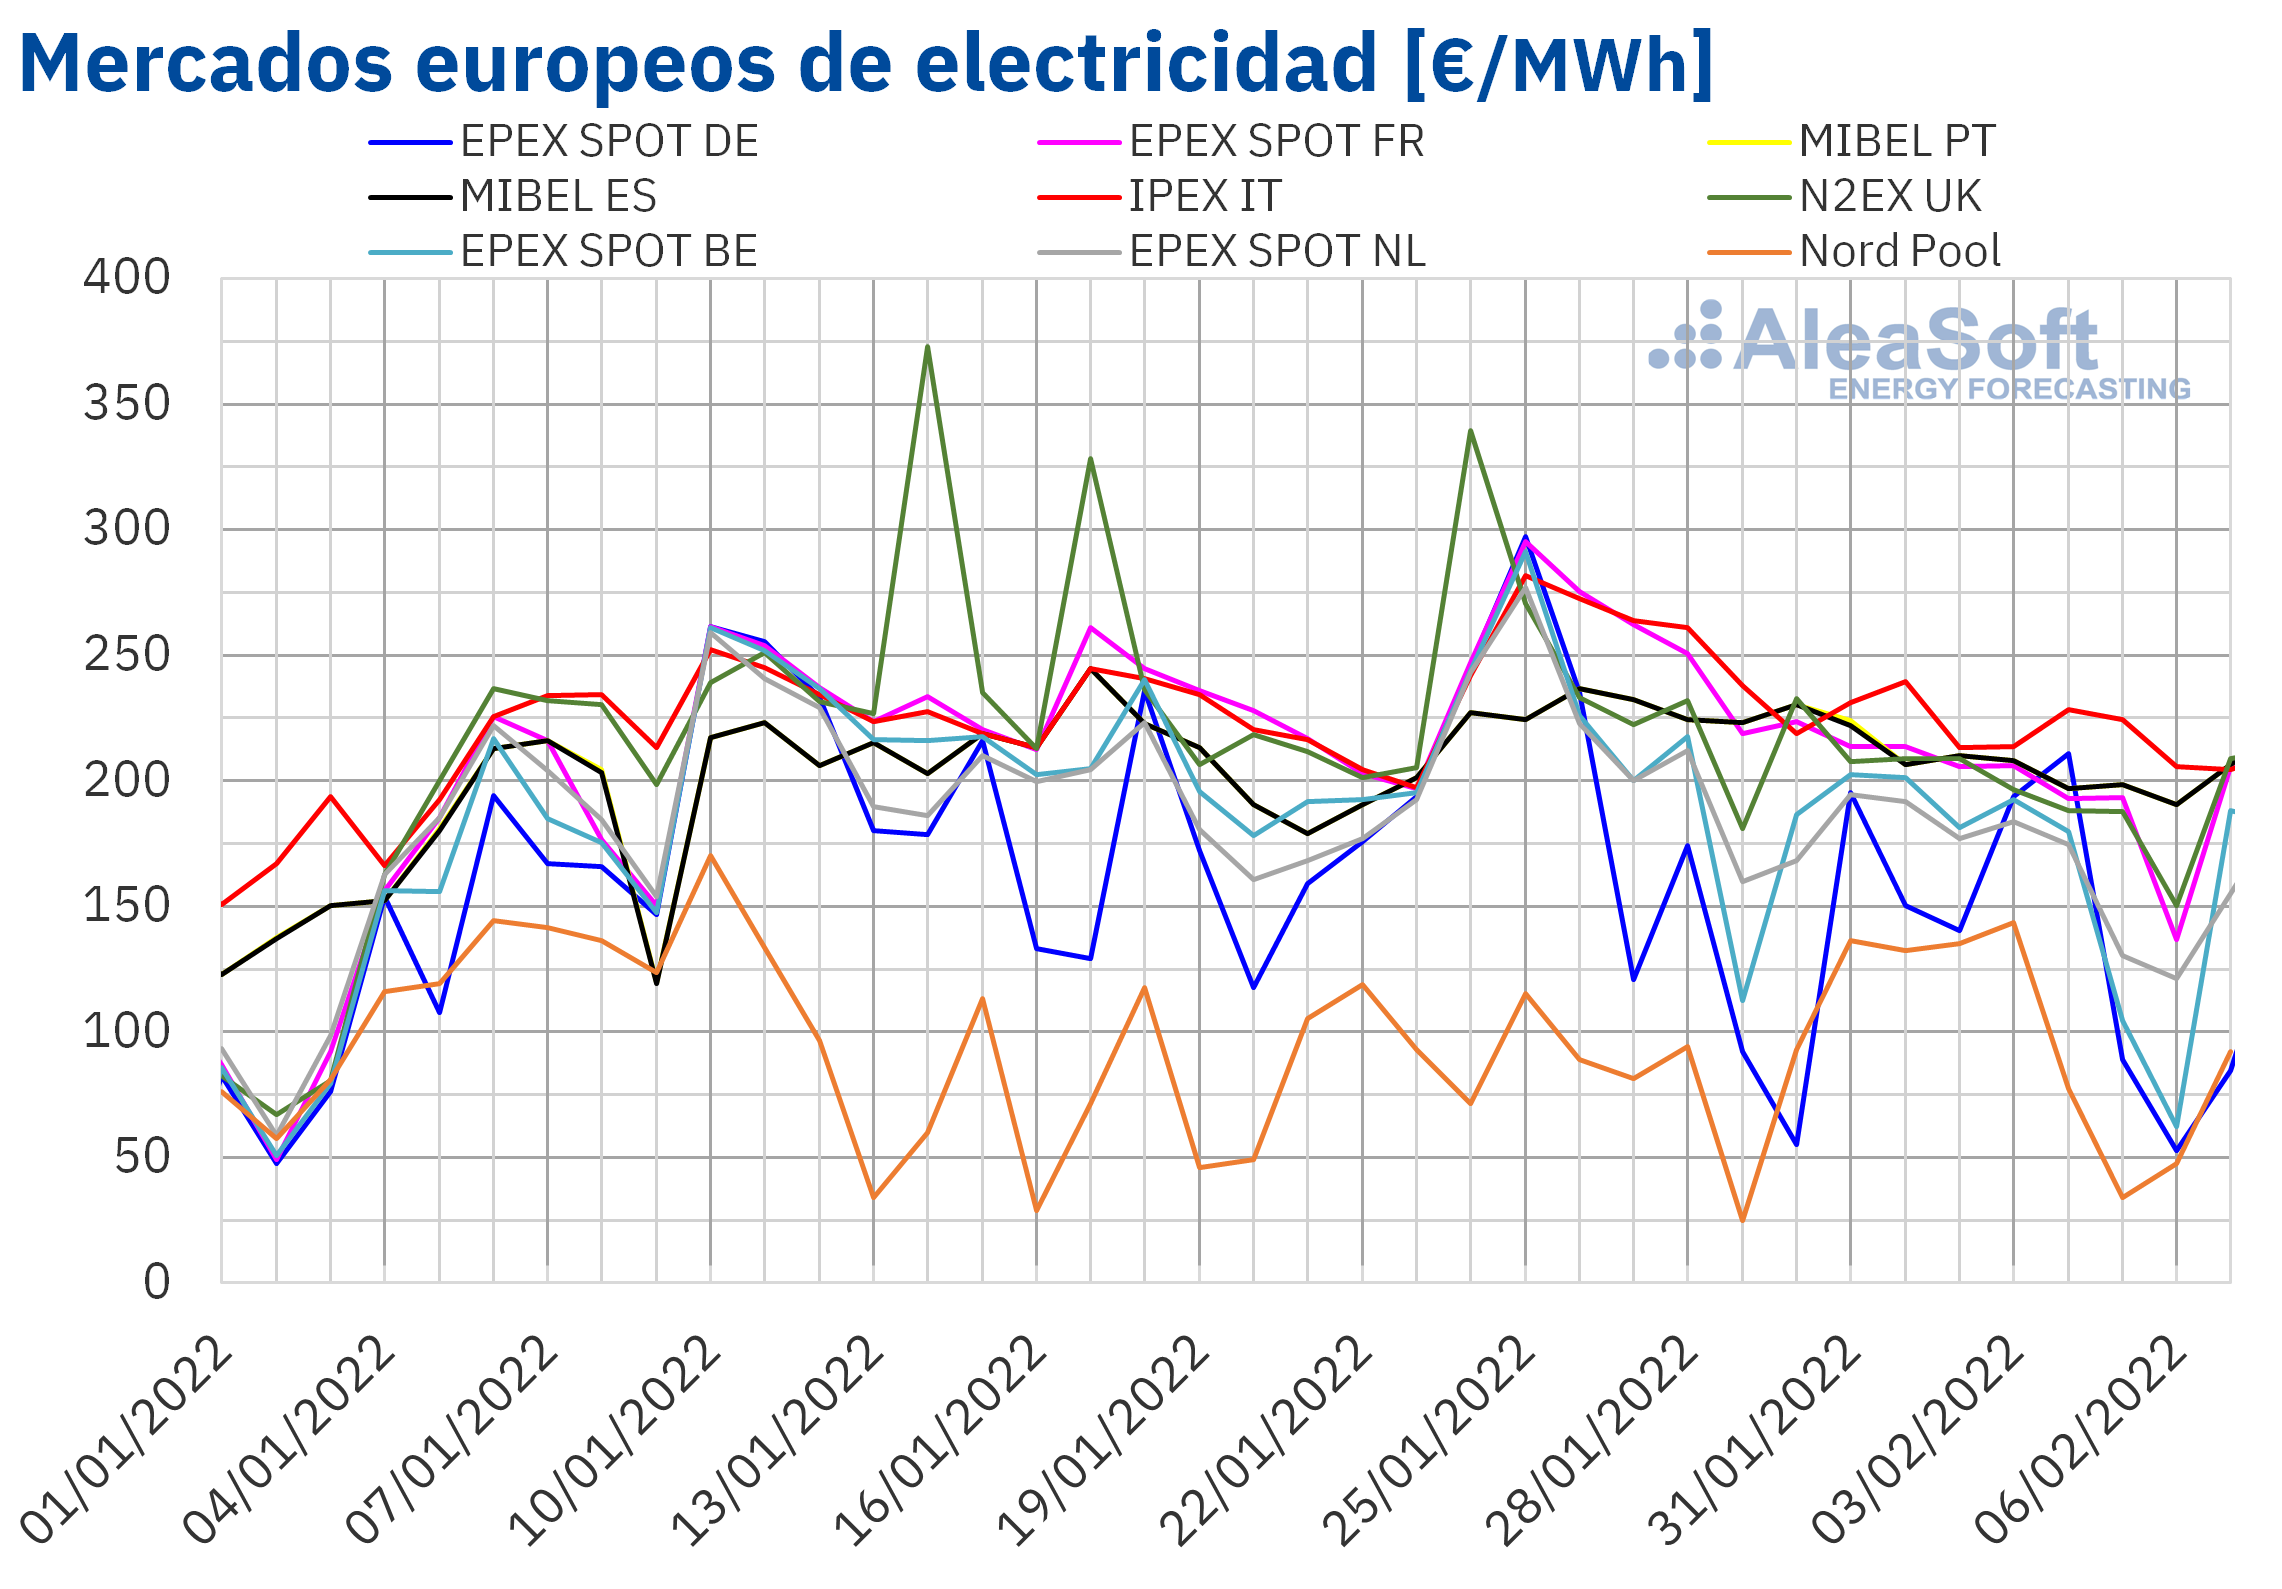 AleaSoft: Las renovables y los precios del gas ayudan a bajar los precios en la primera semana de febrero